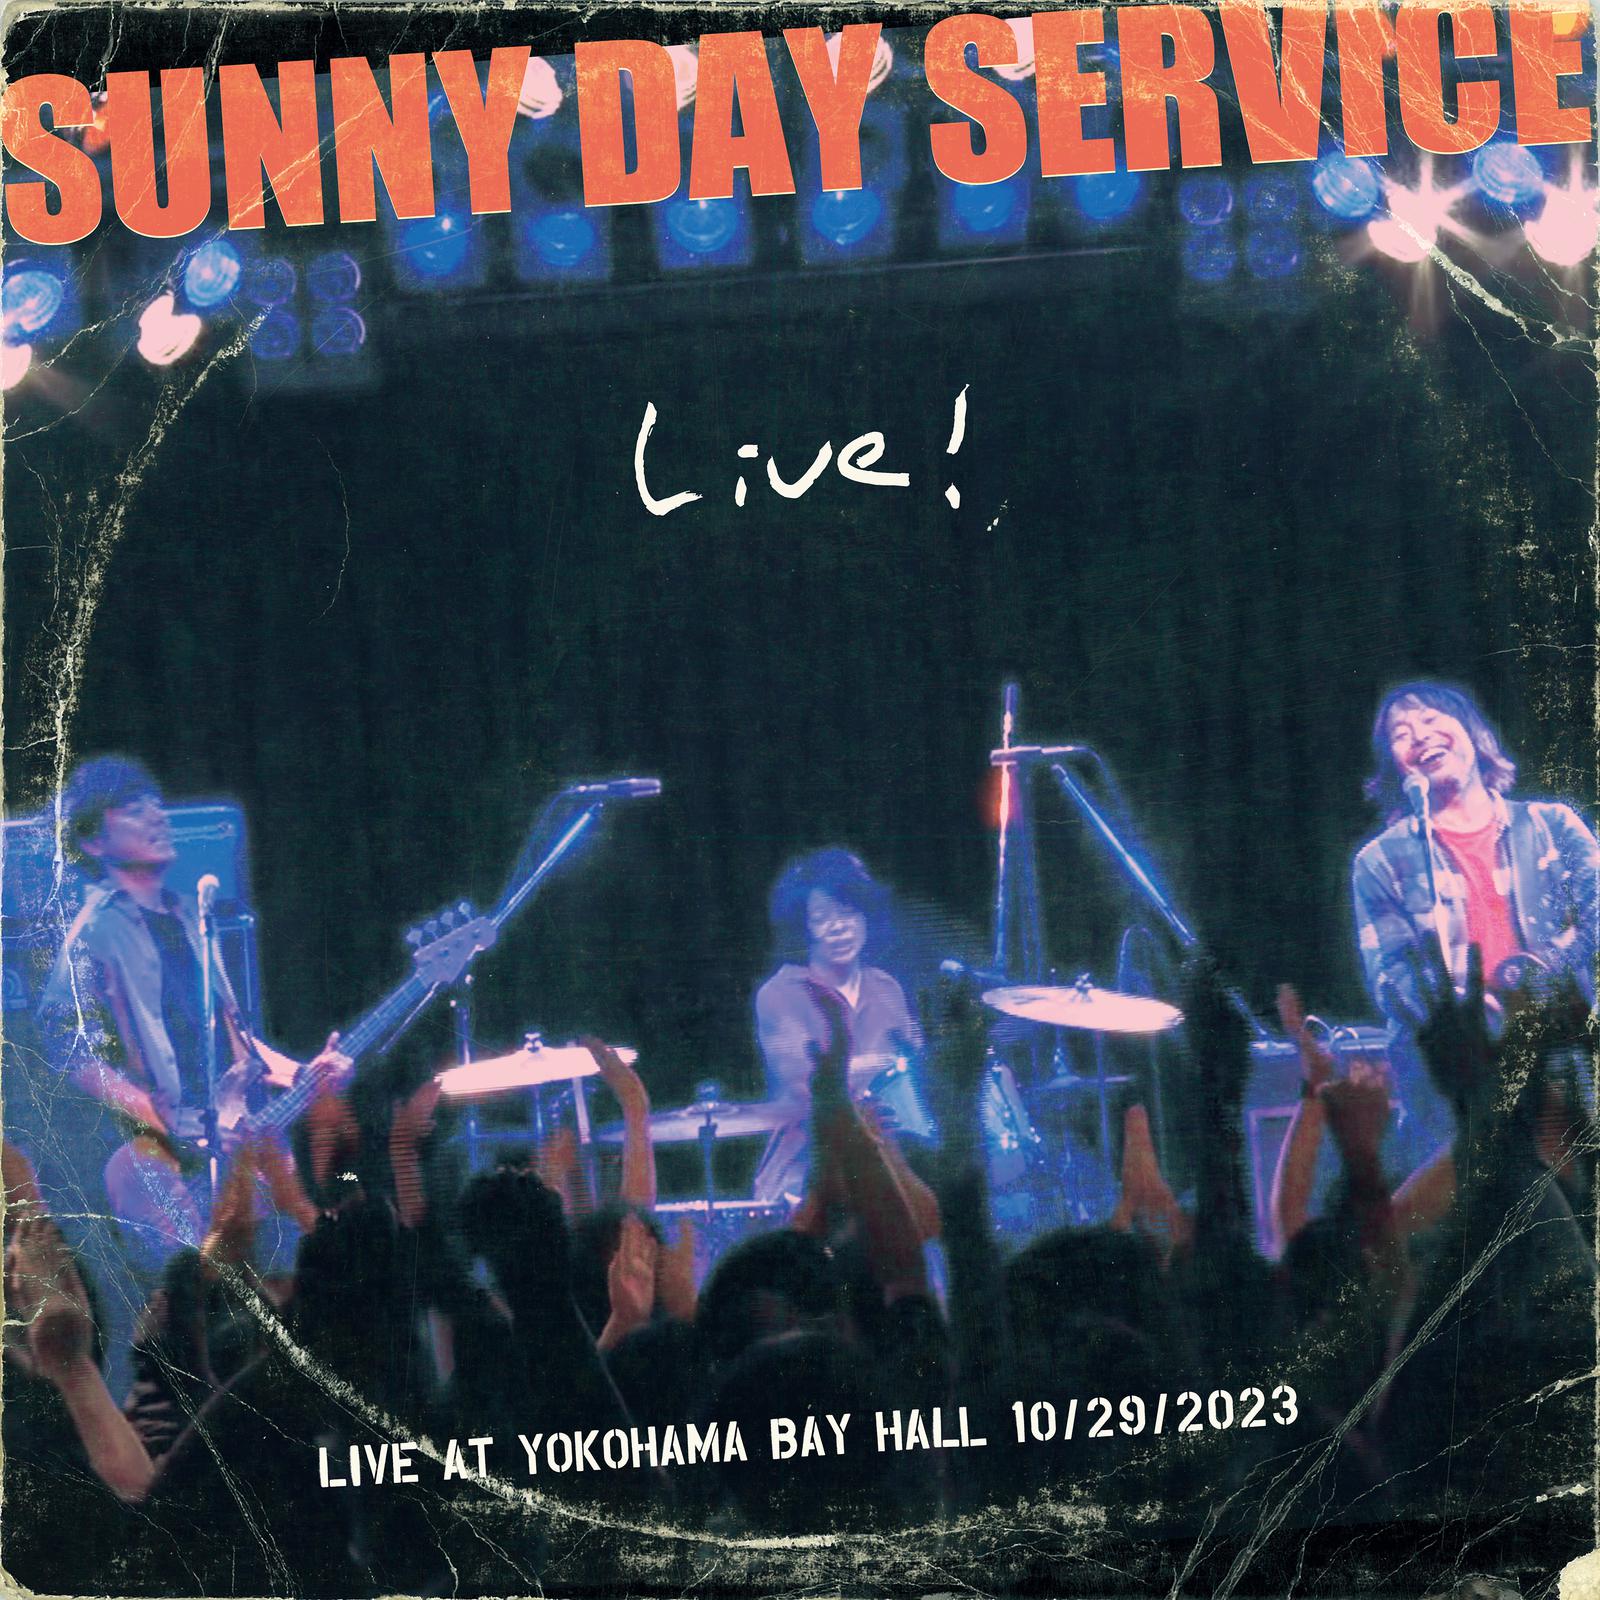 Sunny Day Service - Goo (LIVE AT YOKOHAMA BAY HALL 10/29/2023)